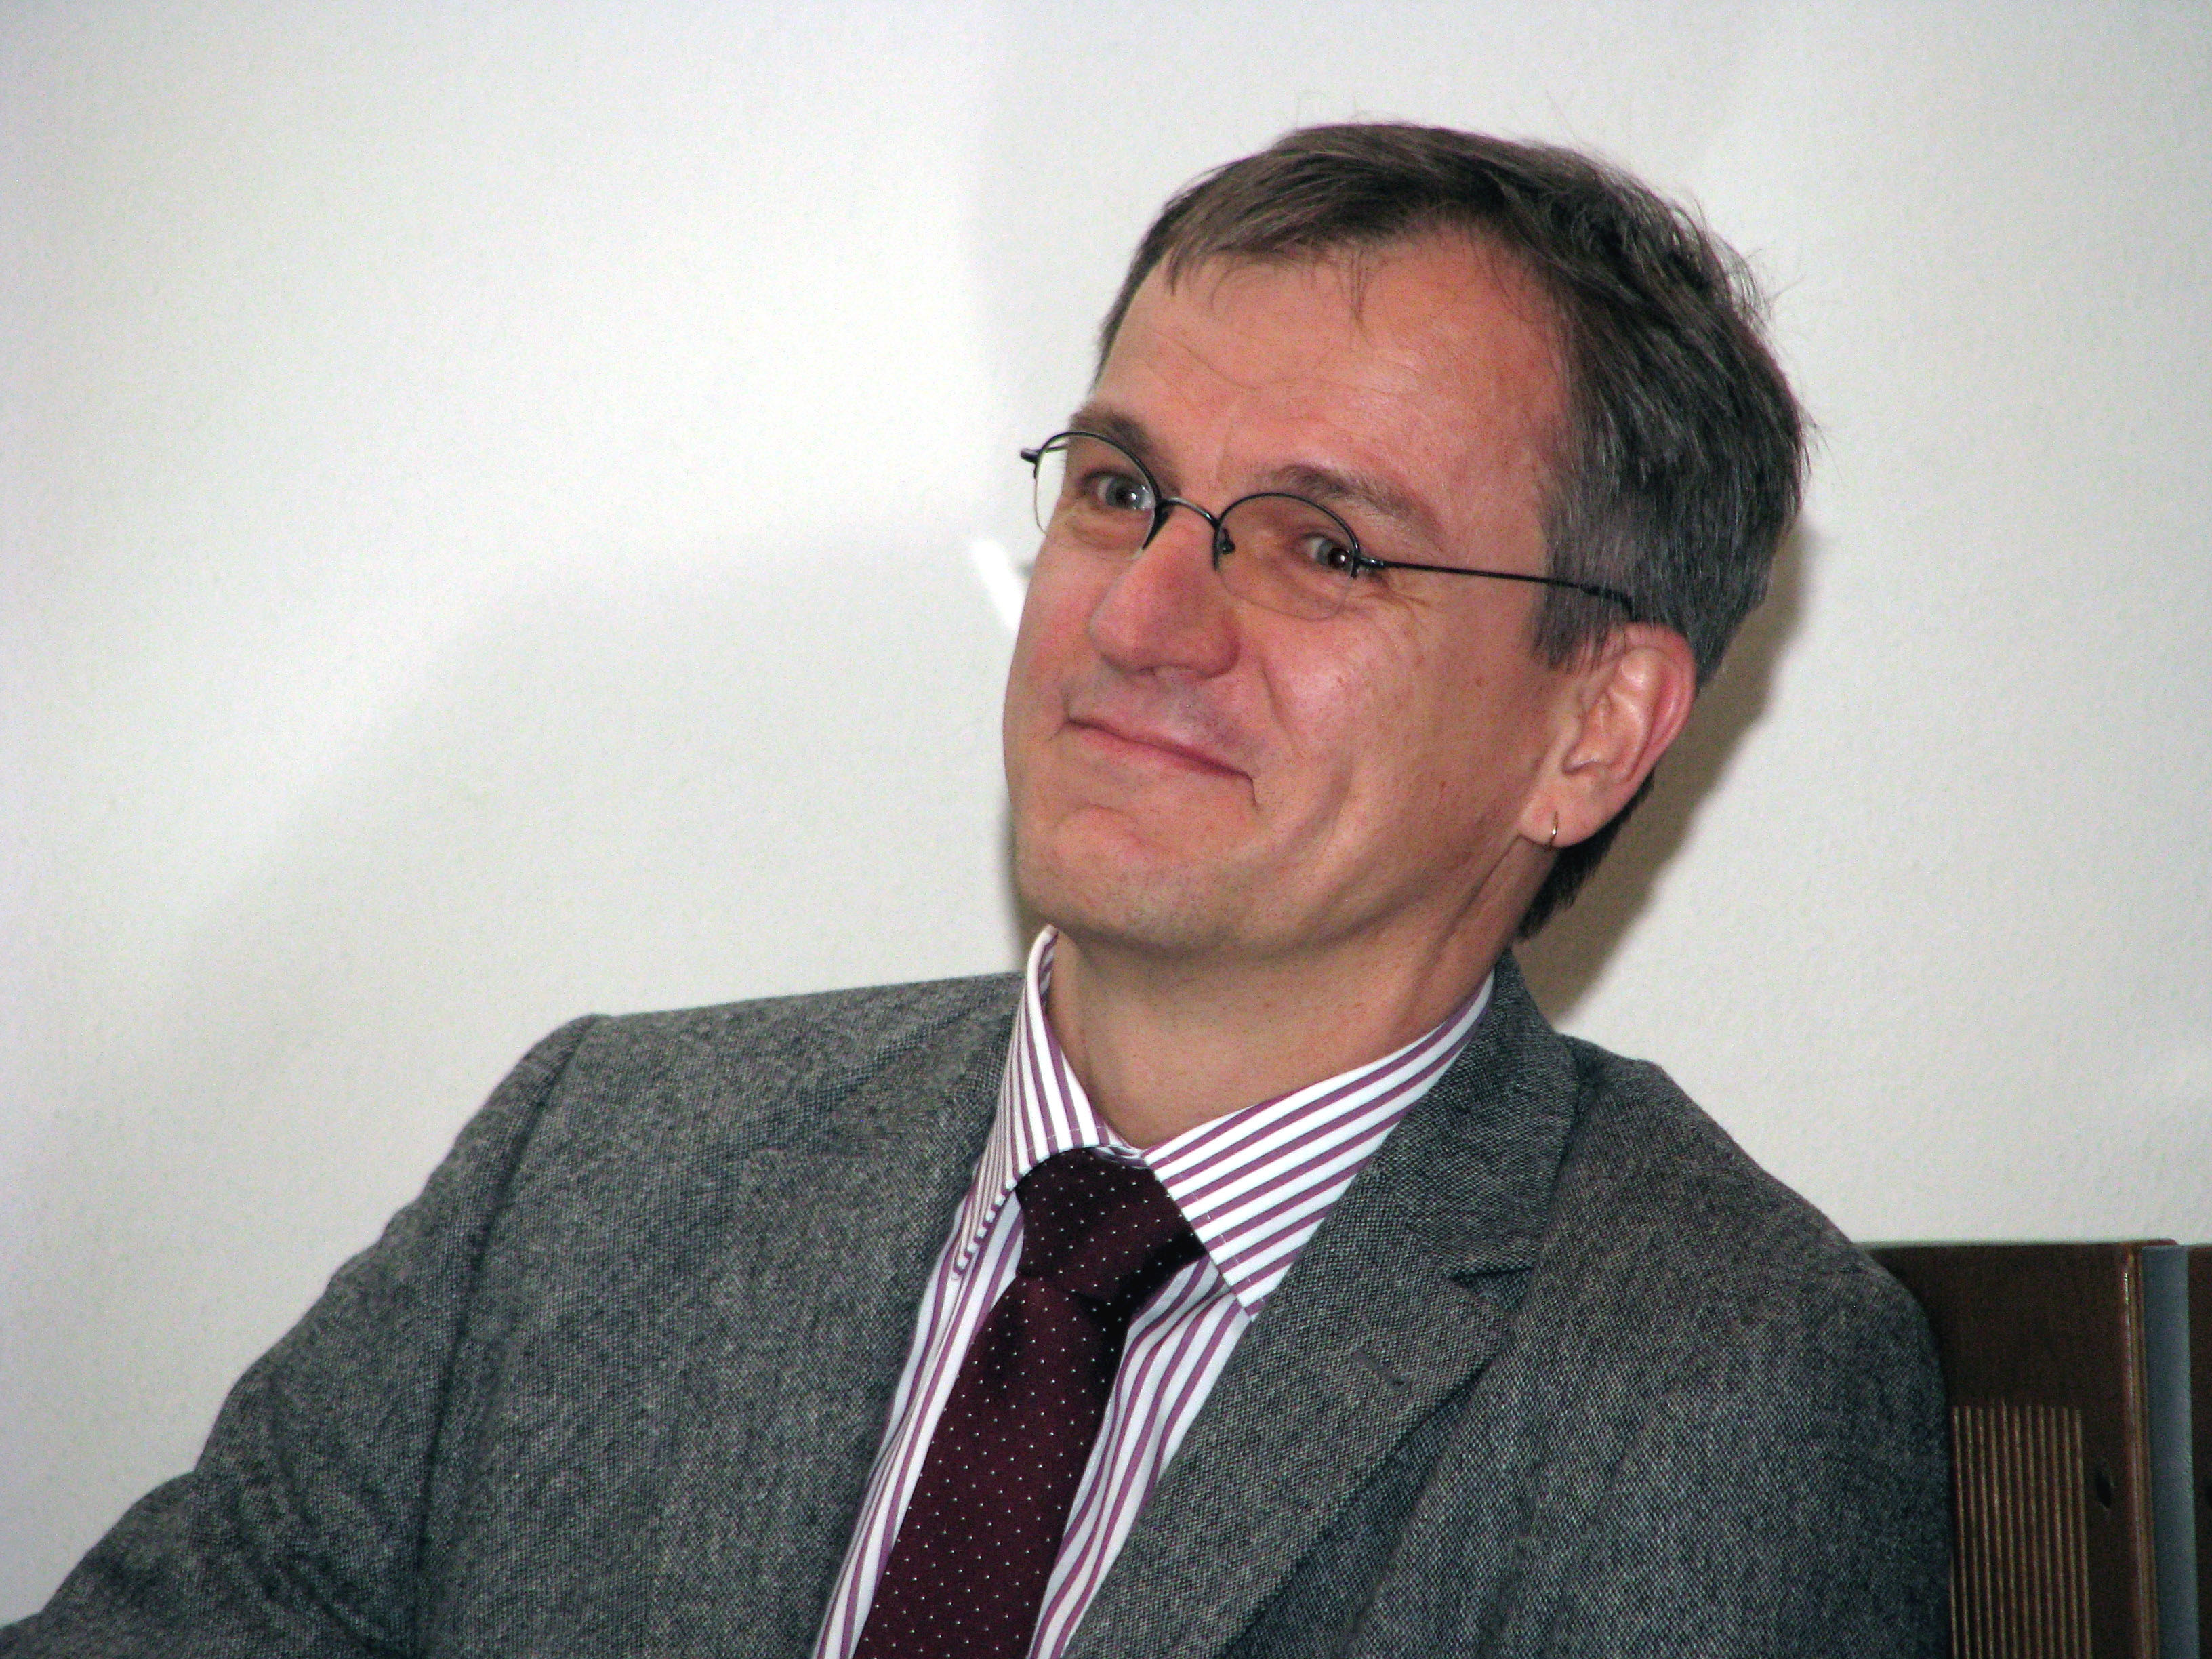 04. Dr. Nils Stein, Wricke-Preisträger 2010